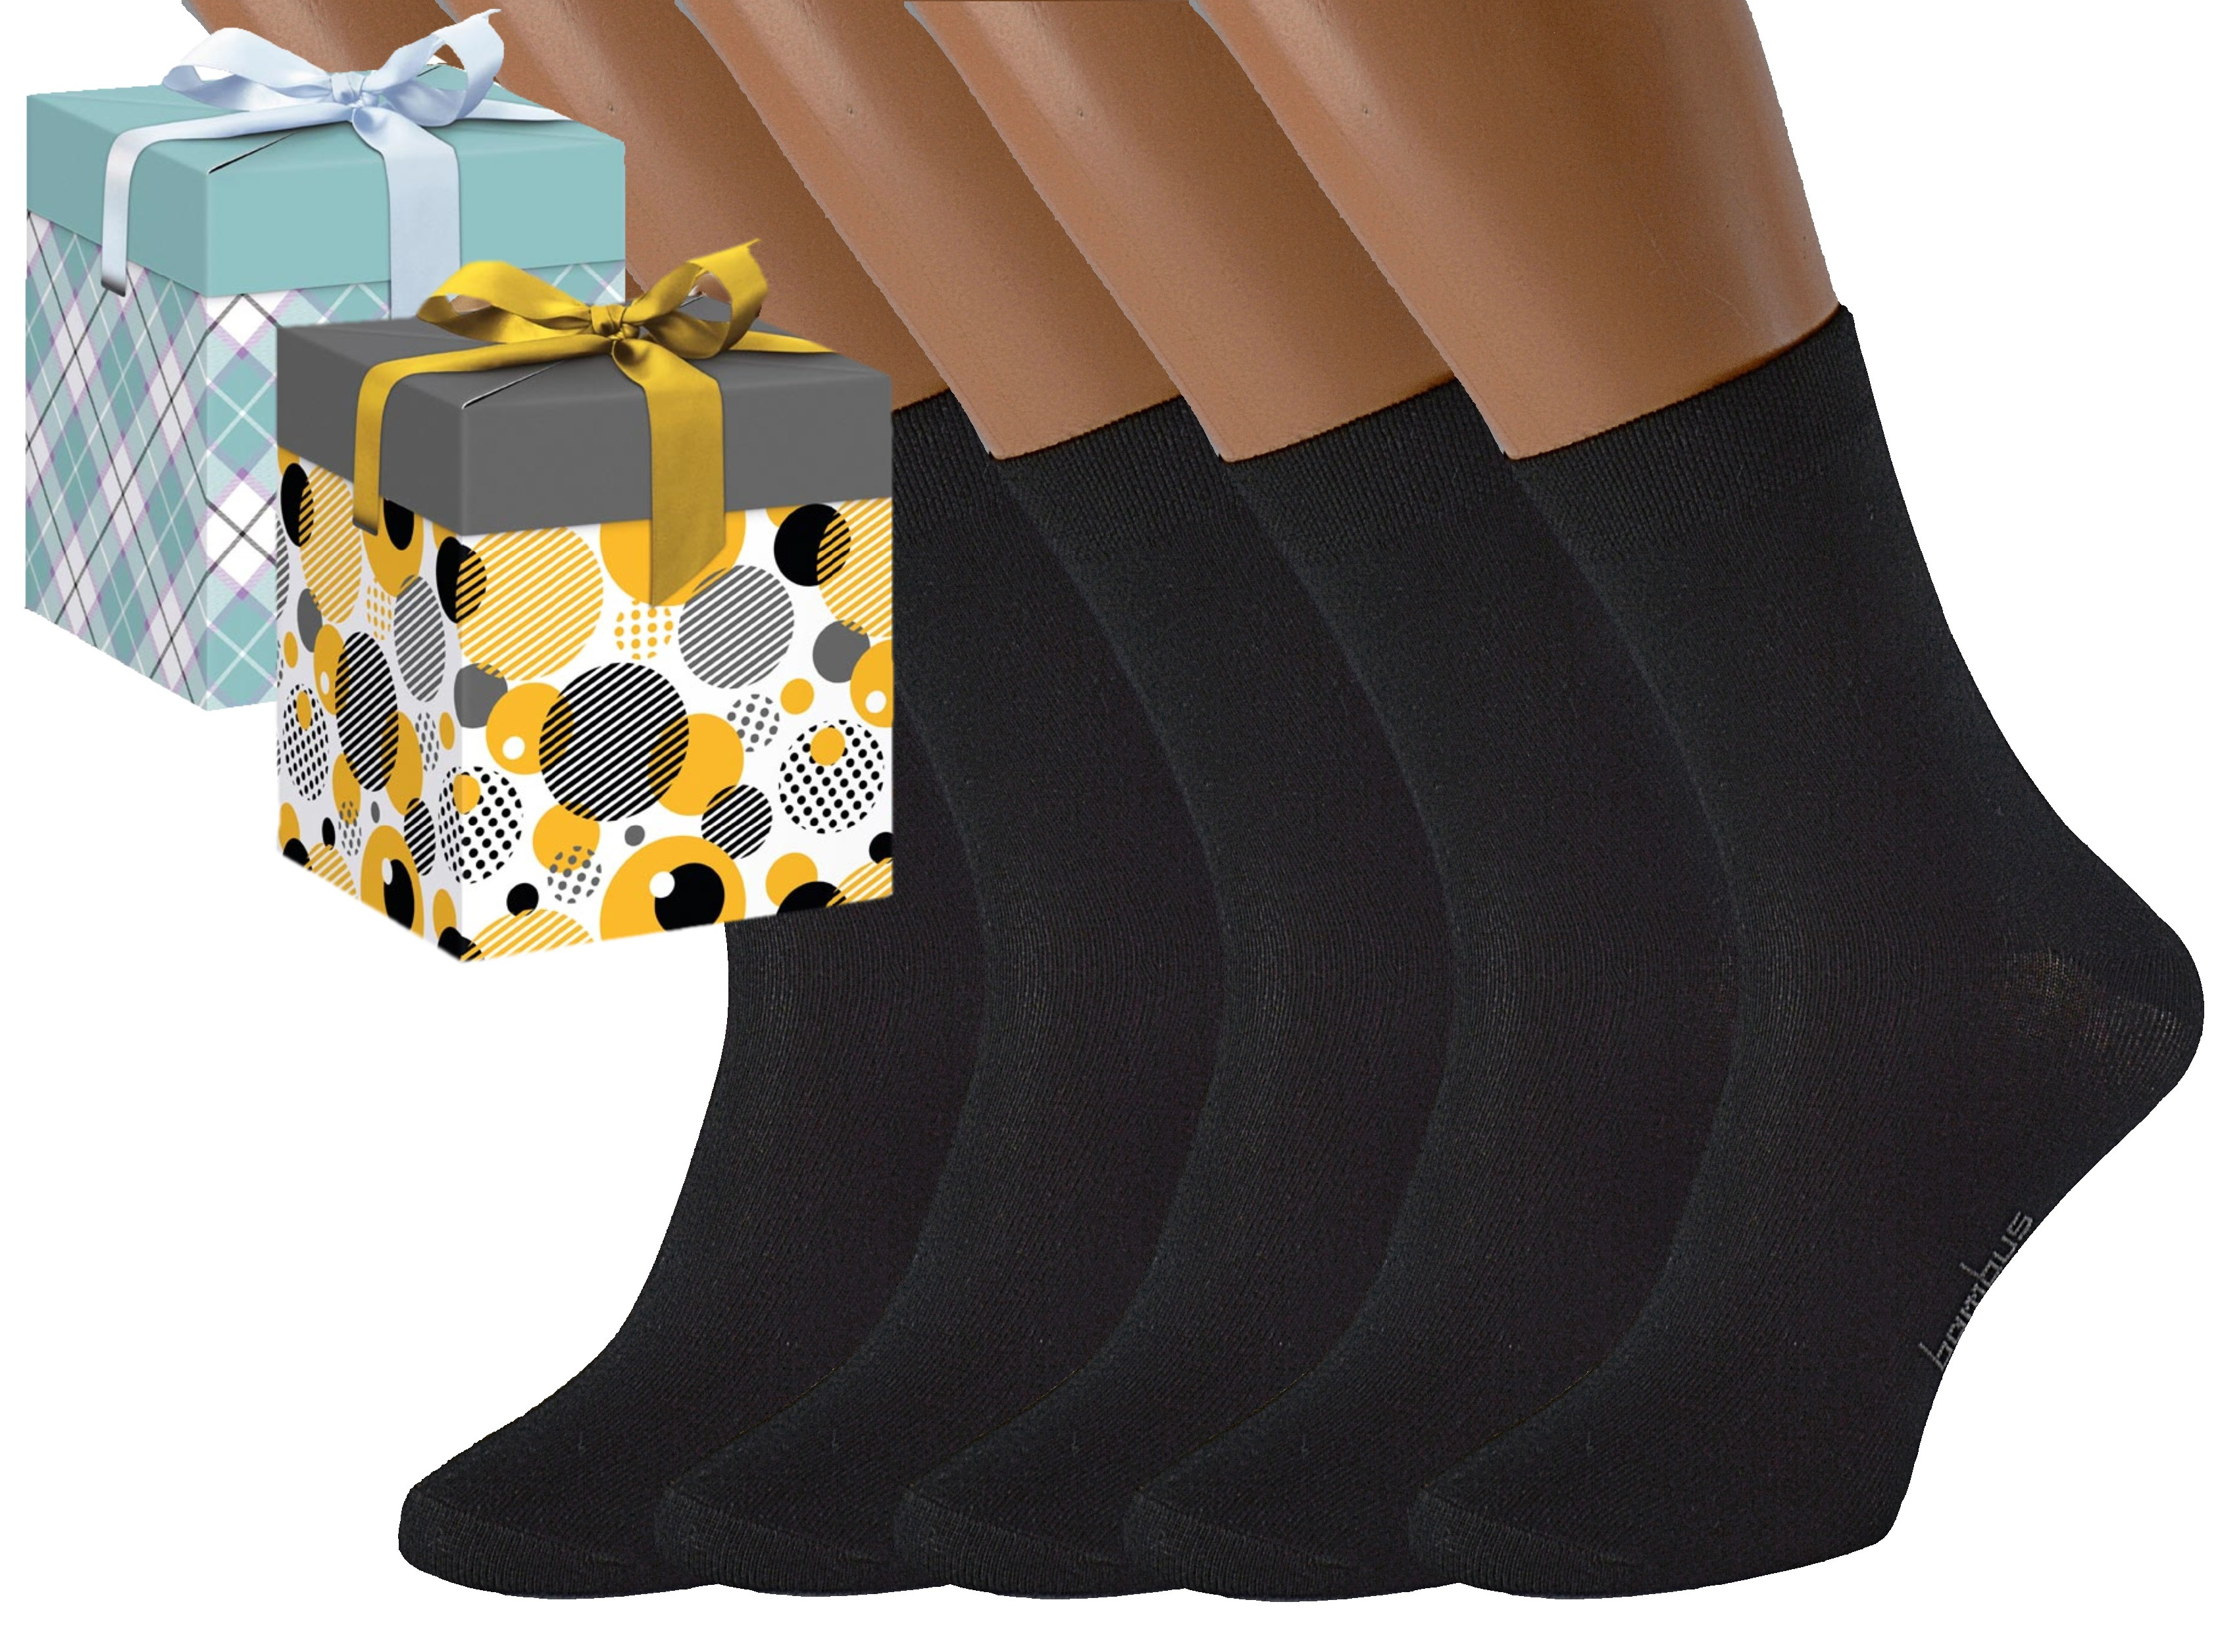 Produkt Dárkové balení 5 párů bambusových ponožek BAMBOO Barva: Černé, Velikost: EUR 39-42 (UK 6-8), Zvolte variantu dárkového balení: Modrá s oky